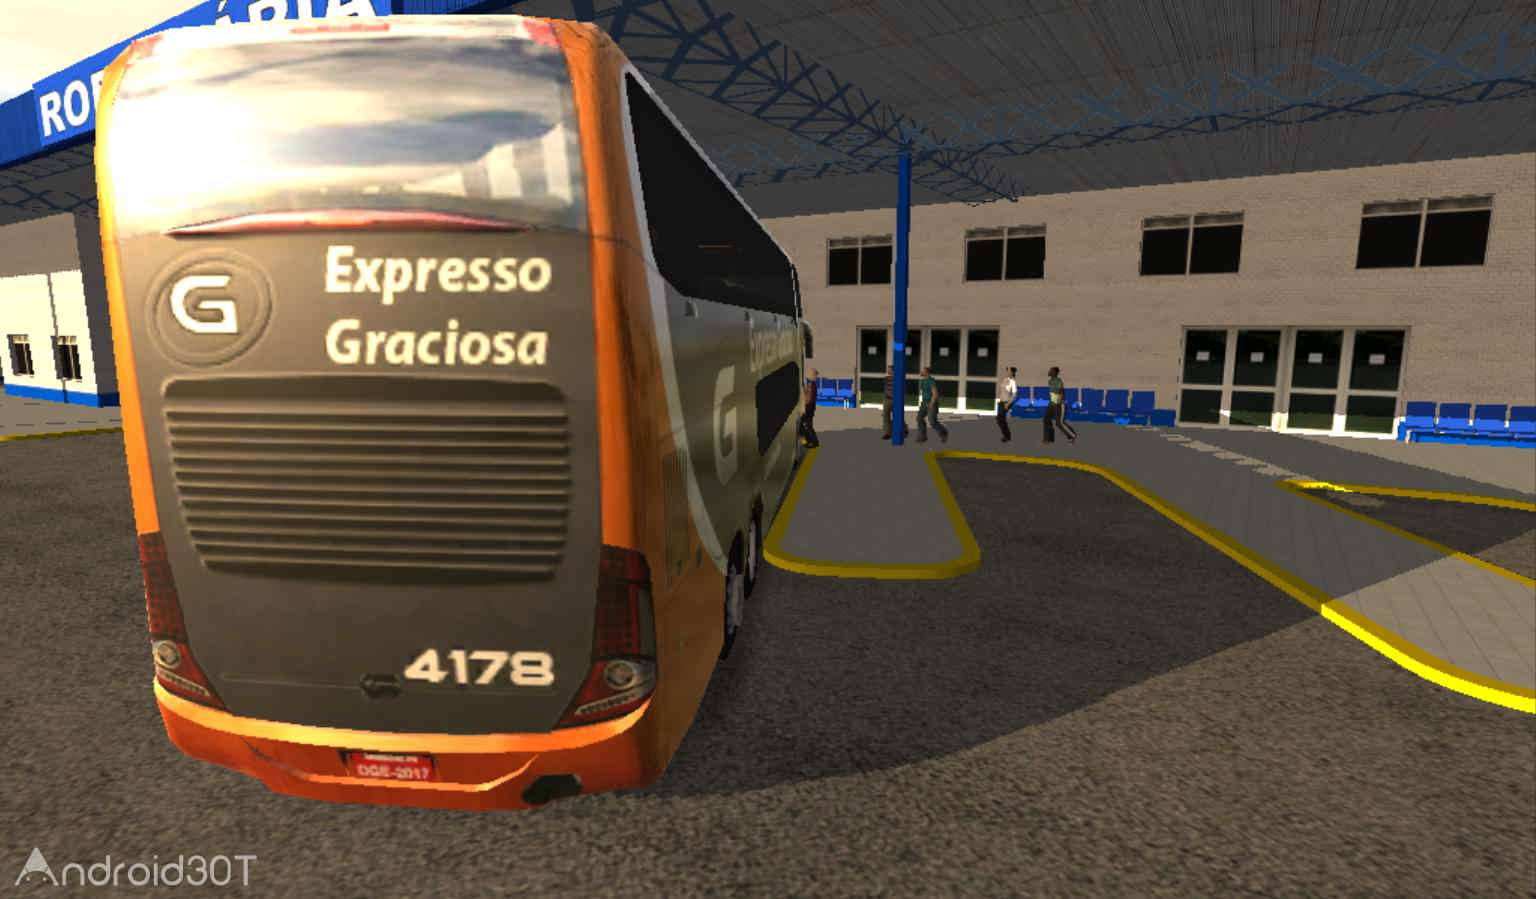 دانلود Heavy Bus Simulator 1.088 – بازی شبیه ساز اتوبوس برای اندروید